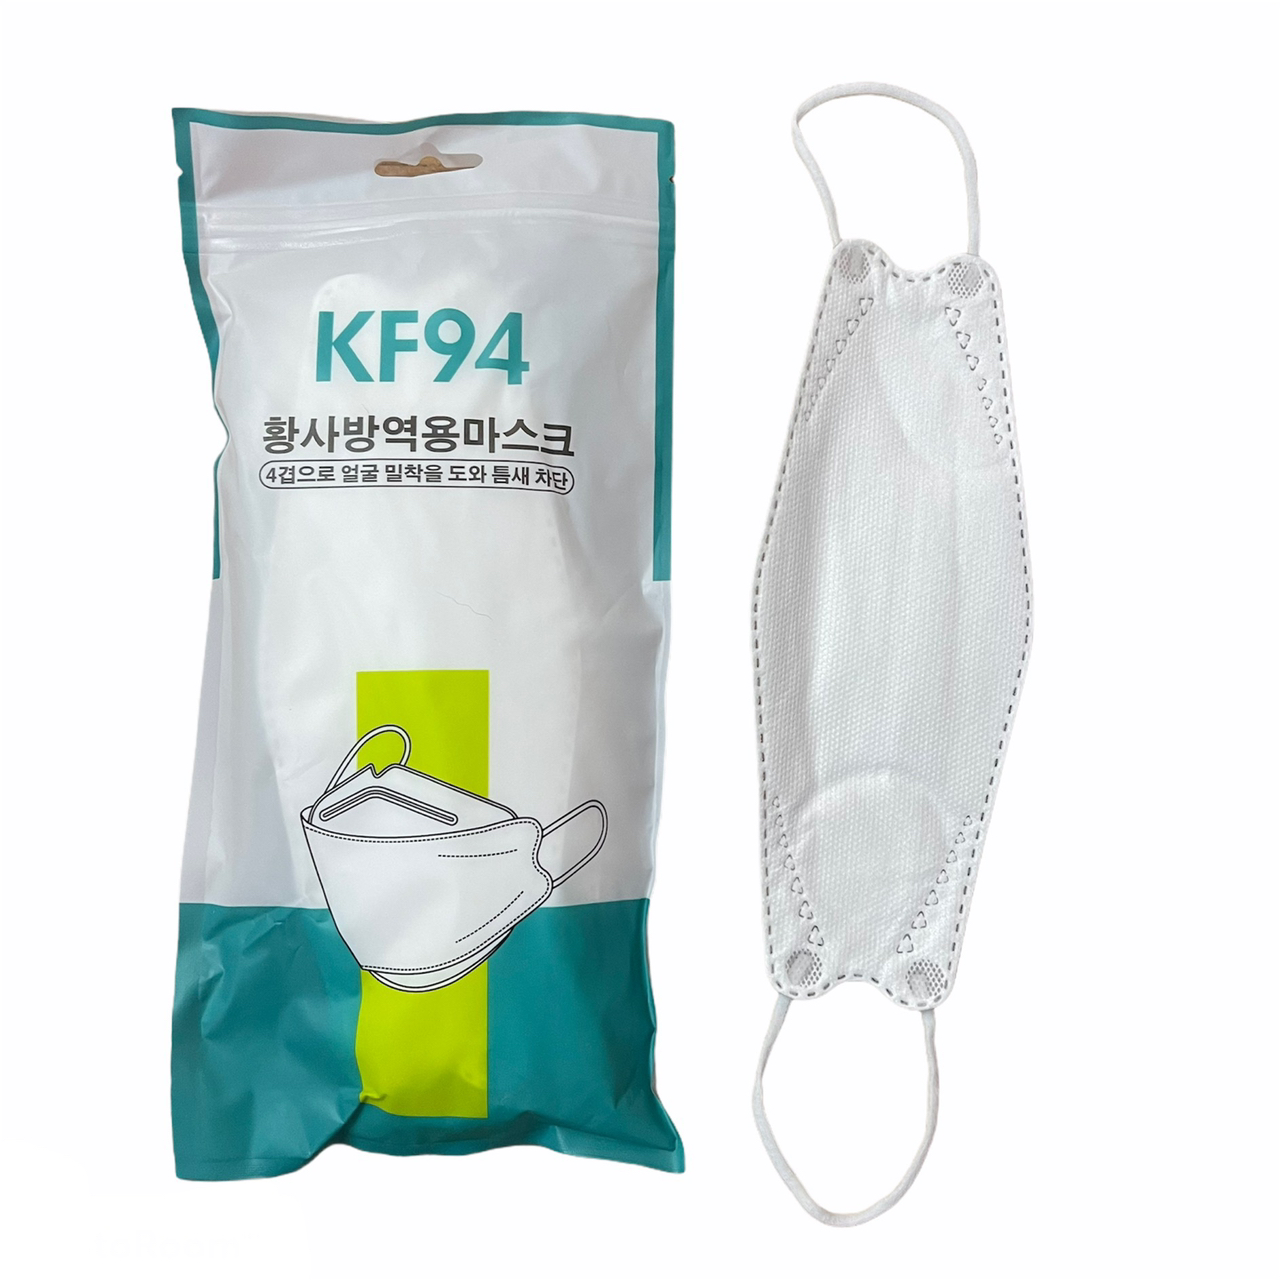 หน้ากากอนามัย 4ชั้น KF94 แพ๊ค10ชิ้น face mask เกาหลี สีขาว สีดำ